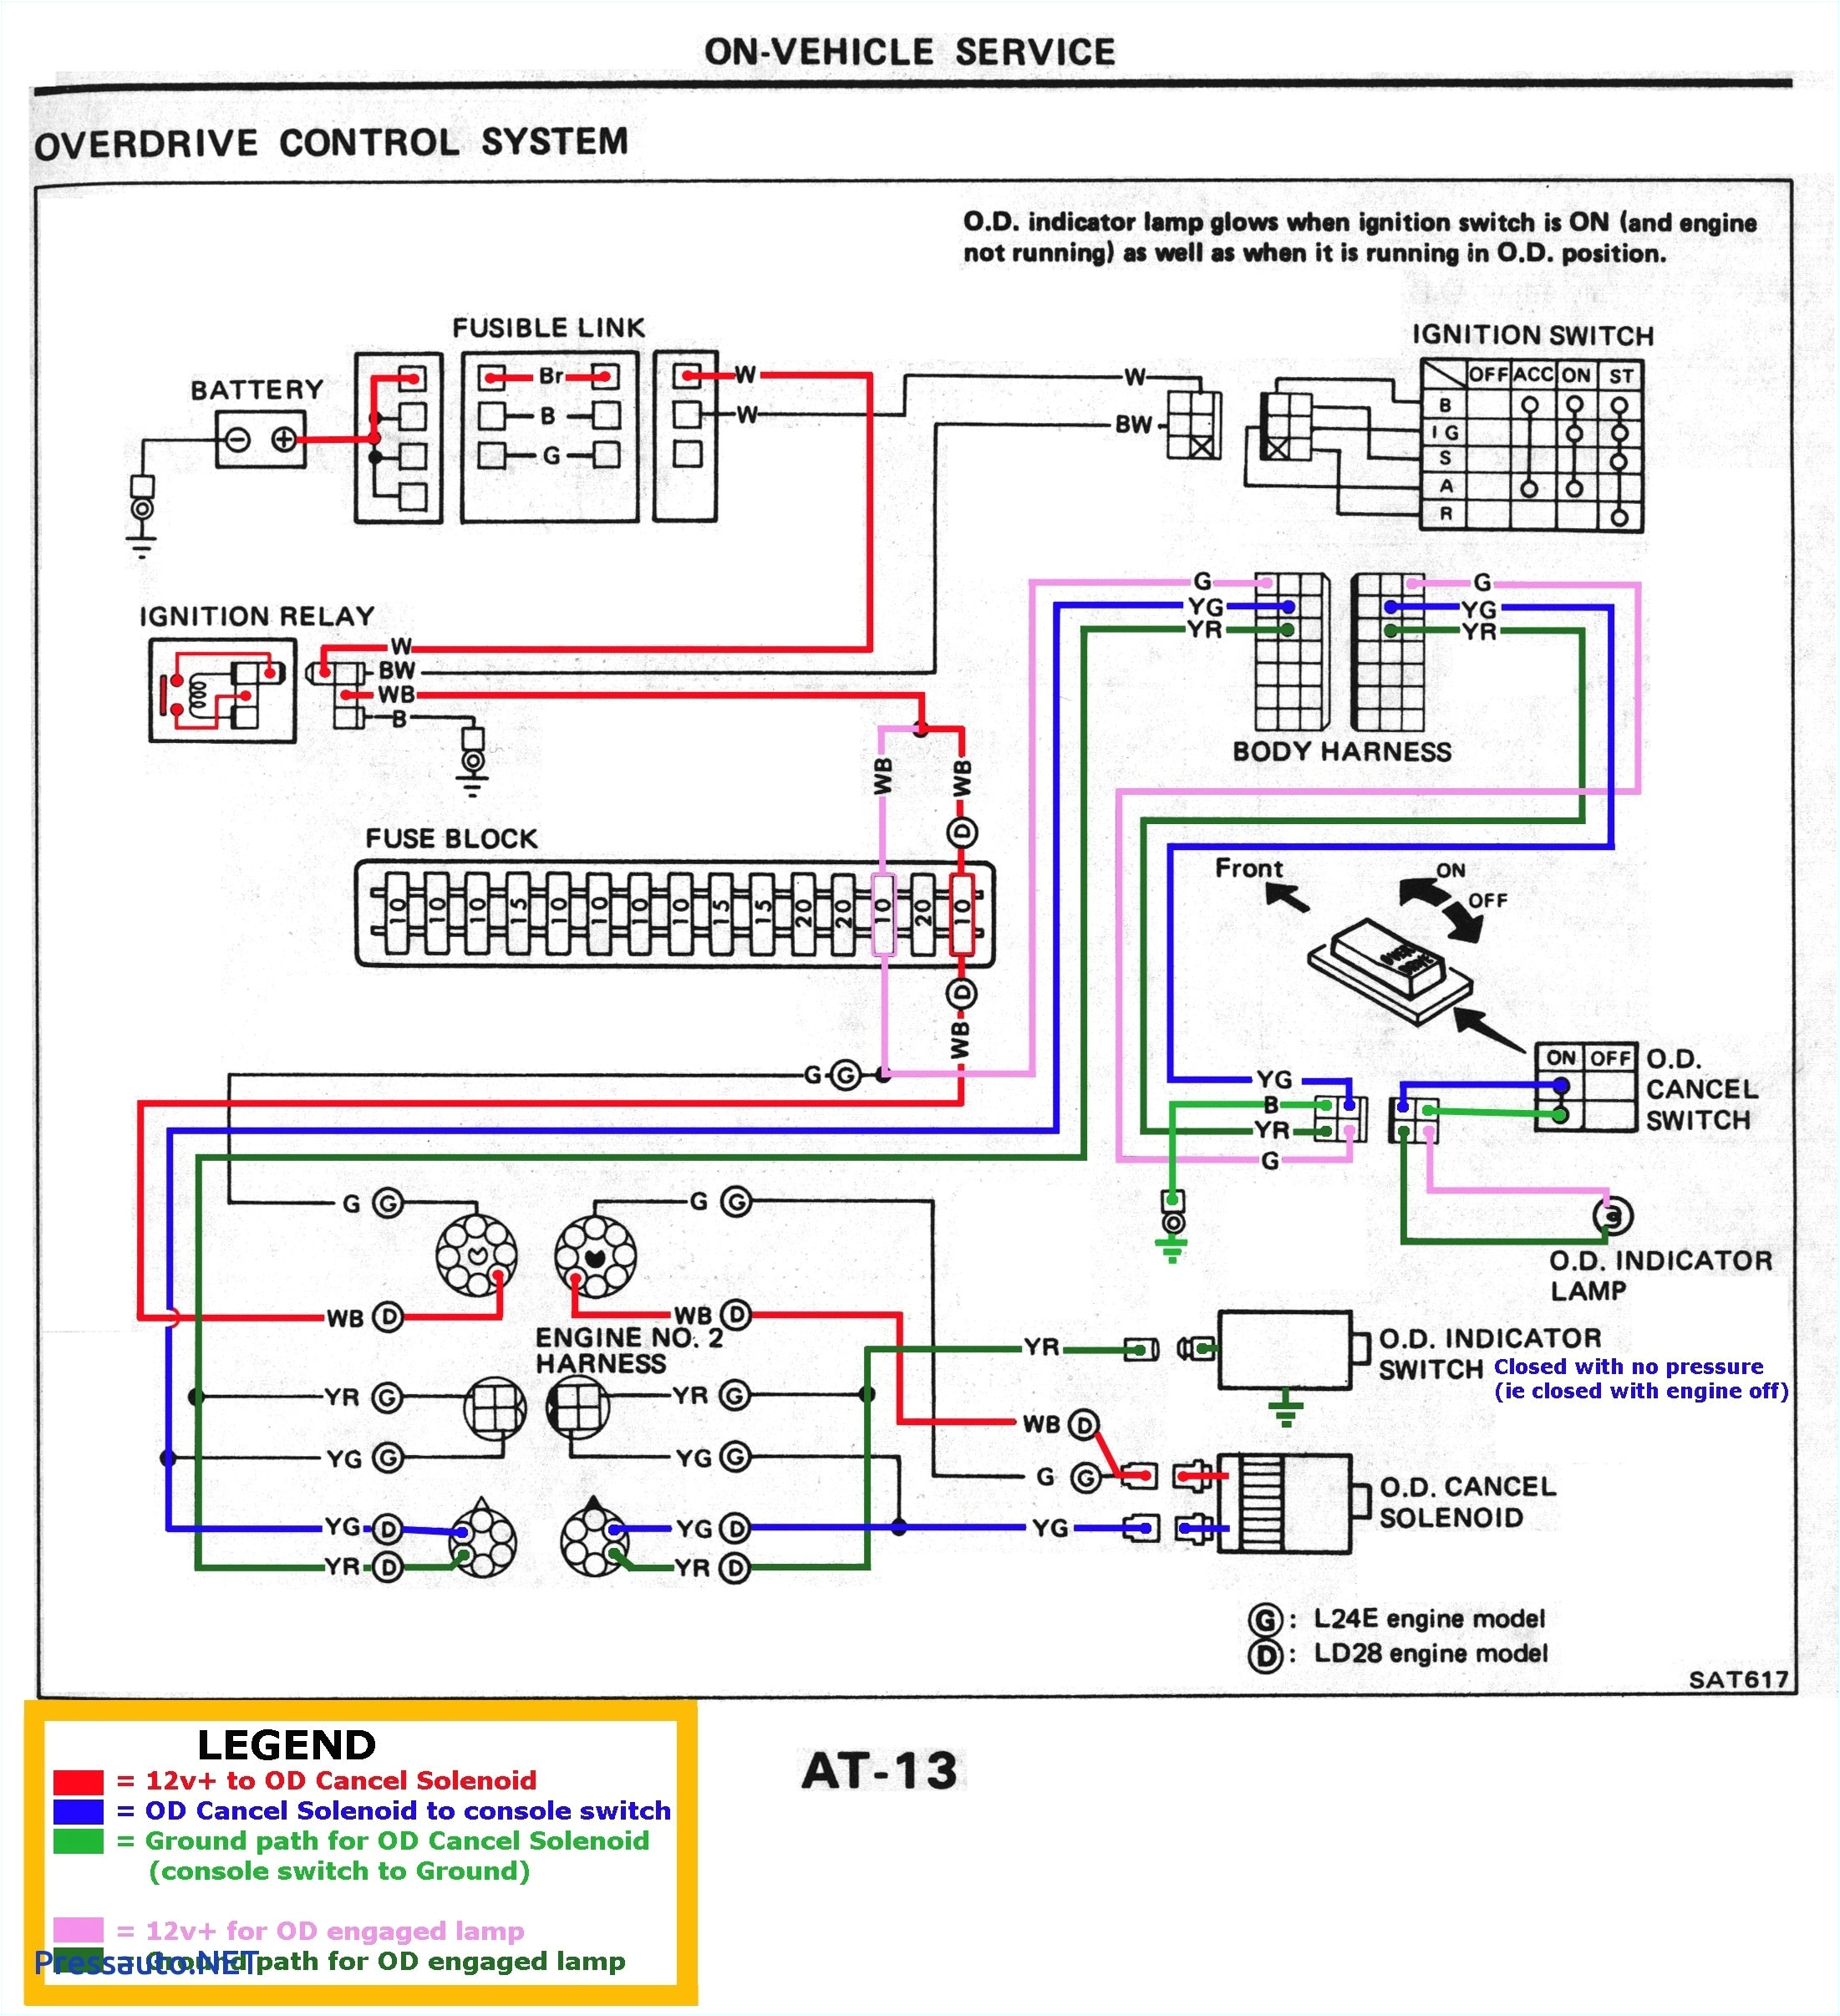 xbox 1 wiring diagram my wiring diagram xbox one wiring diagram wiring diagram expert xbox one